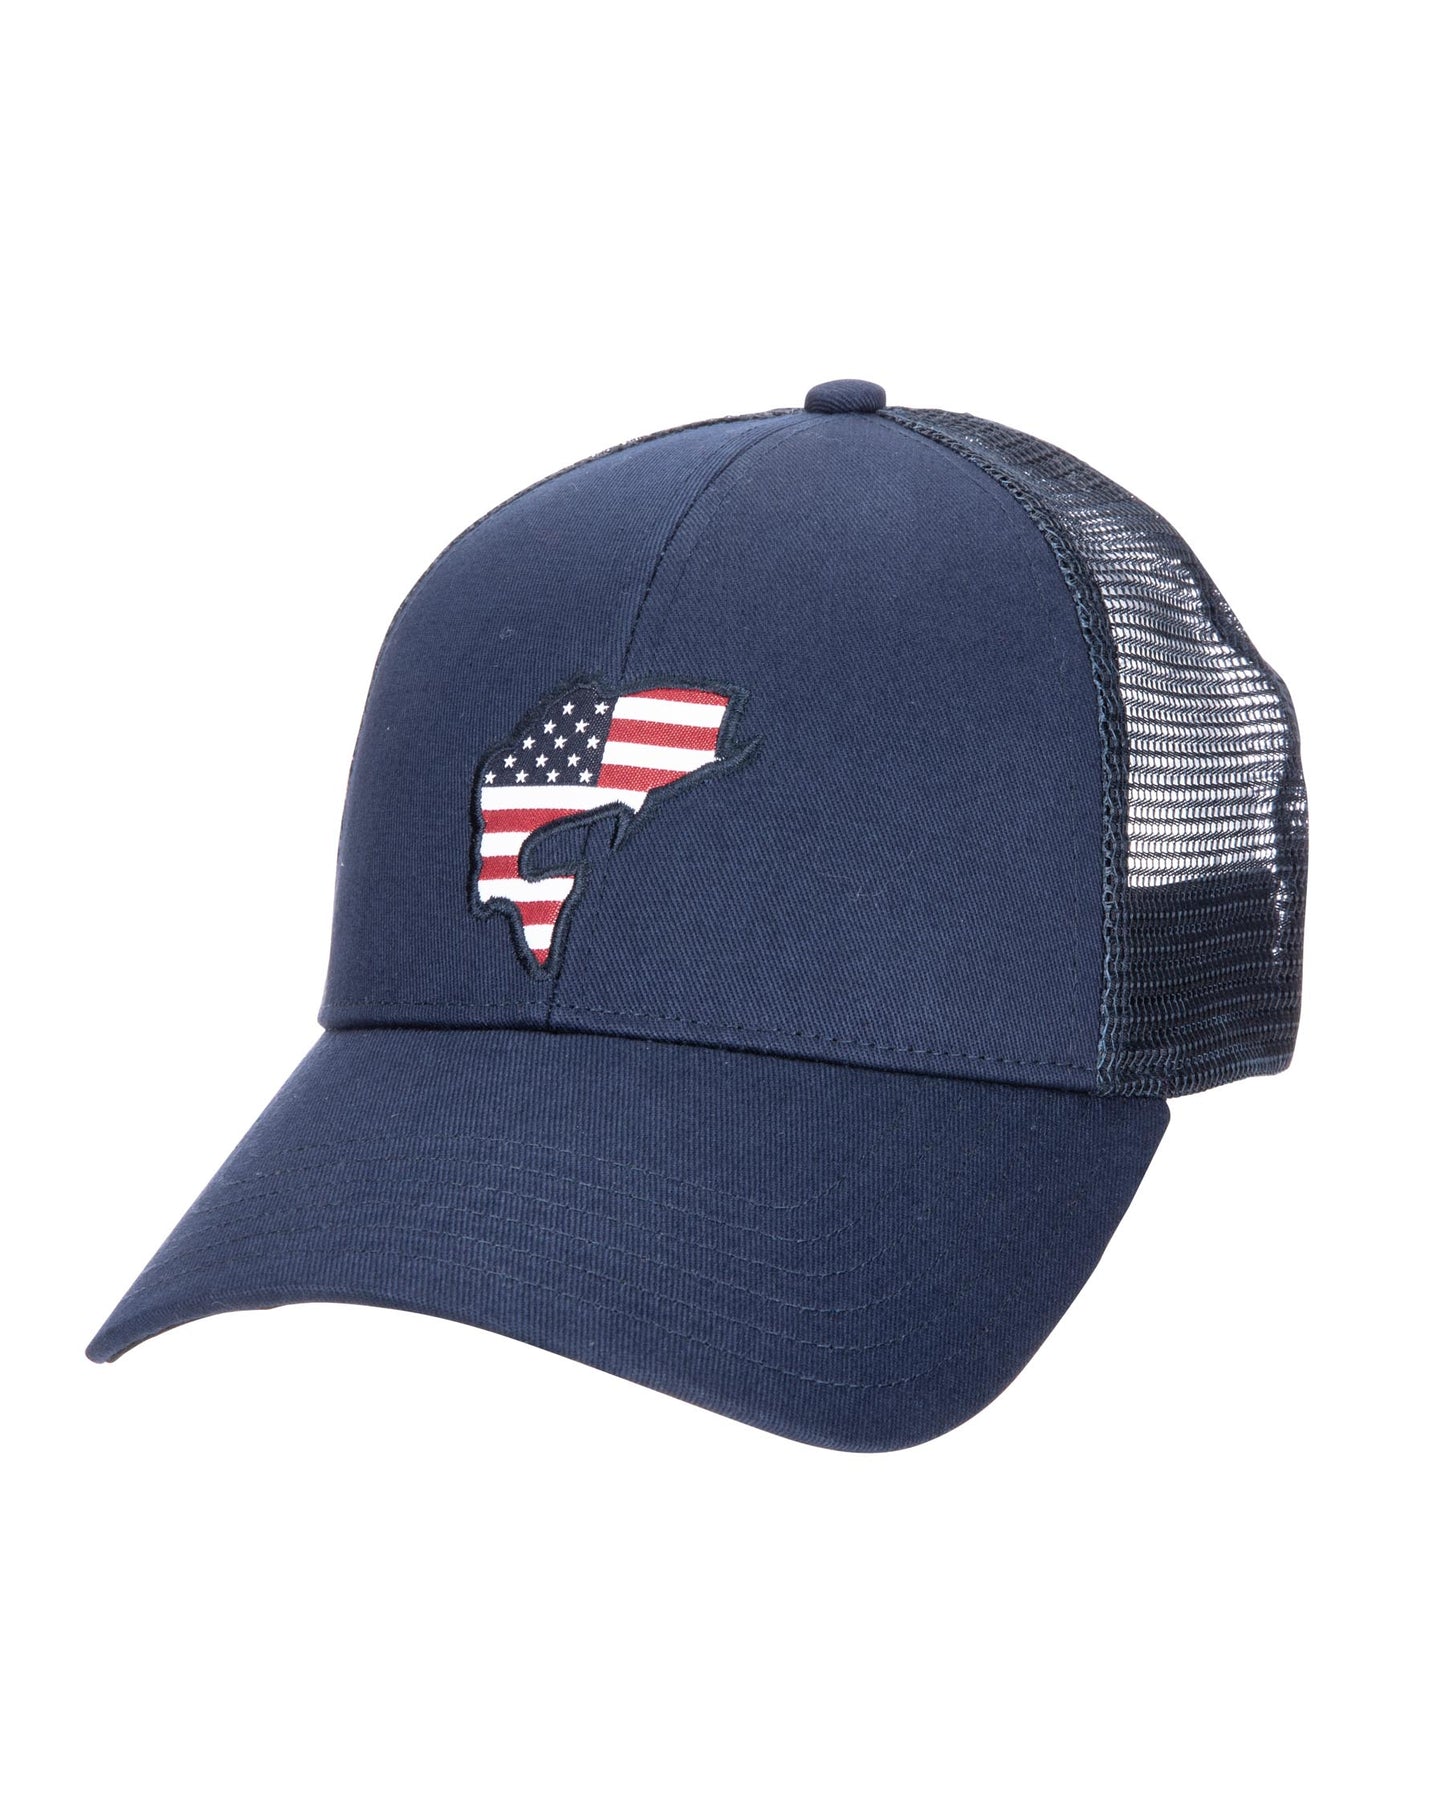 USA Catch Trucker Hat - Admiral Blue